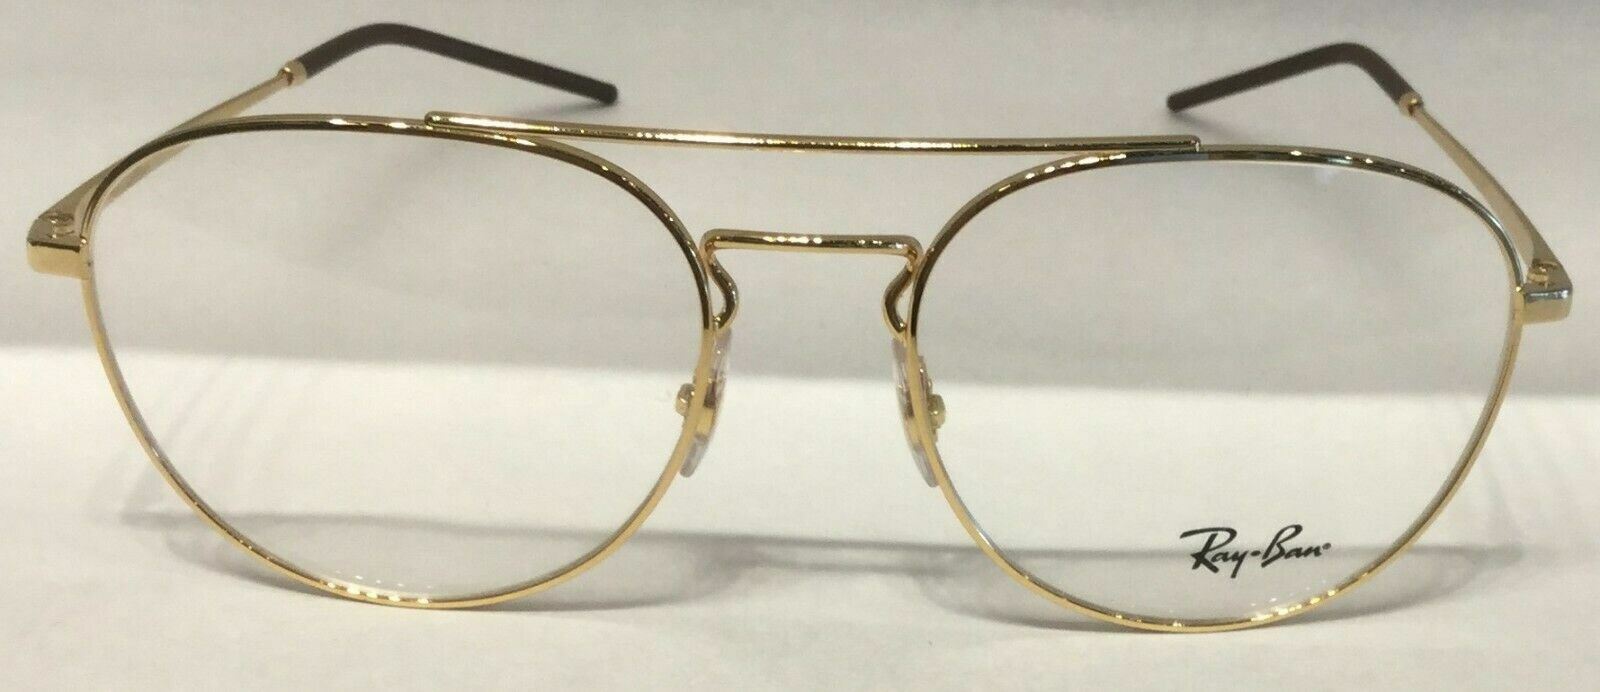 Ray Ban 0RX 6414 2500 GOLD Eyeglasses